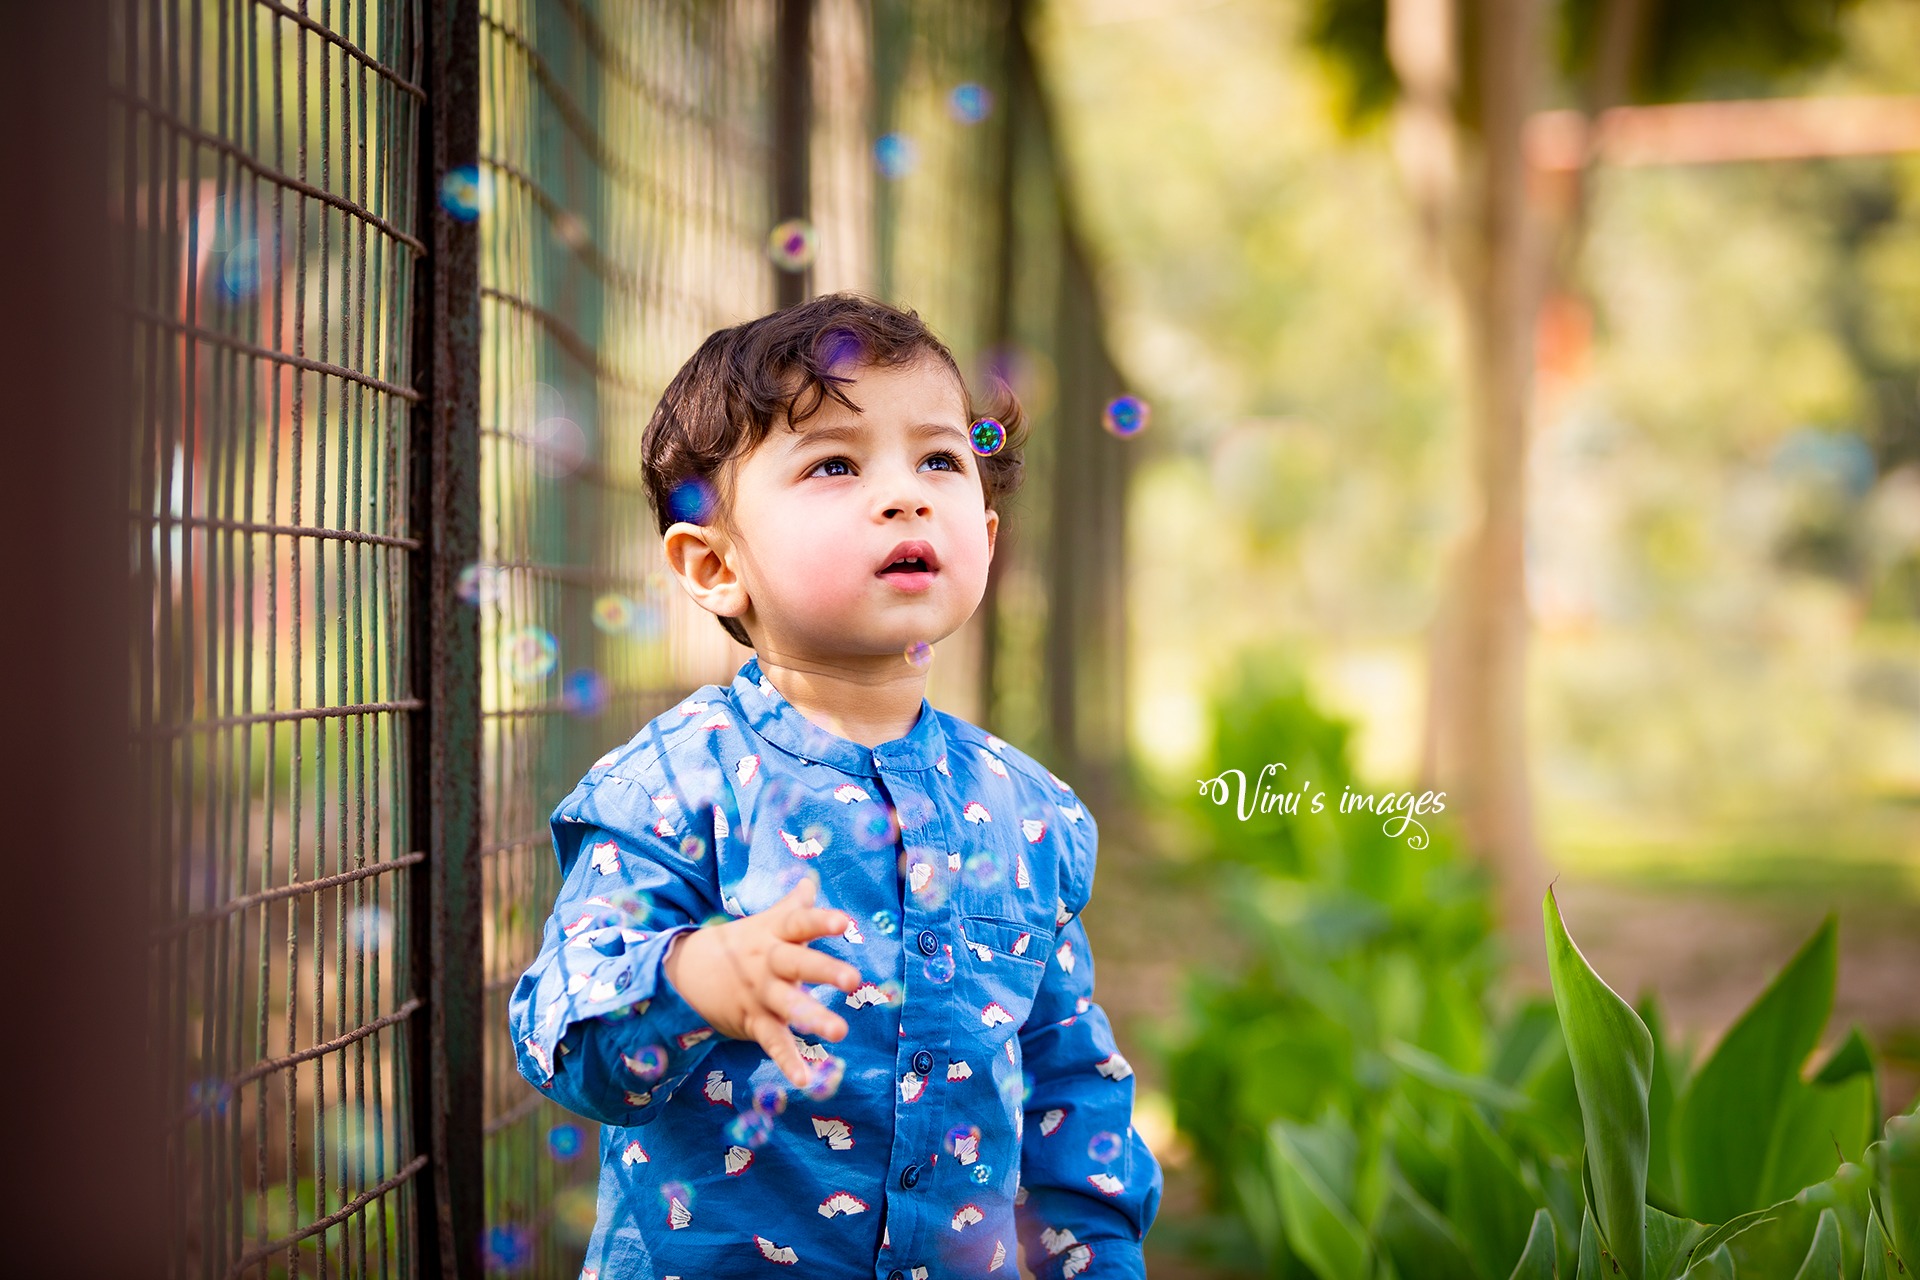 Outdoor Family Photoshoot Ideas & Tips • RUN WILD MY CHILD